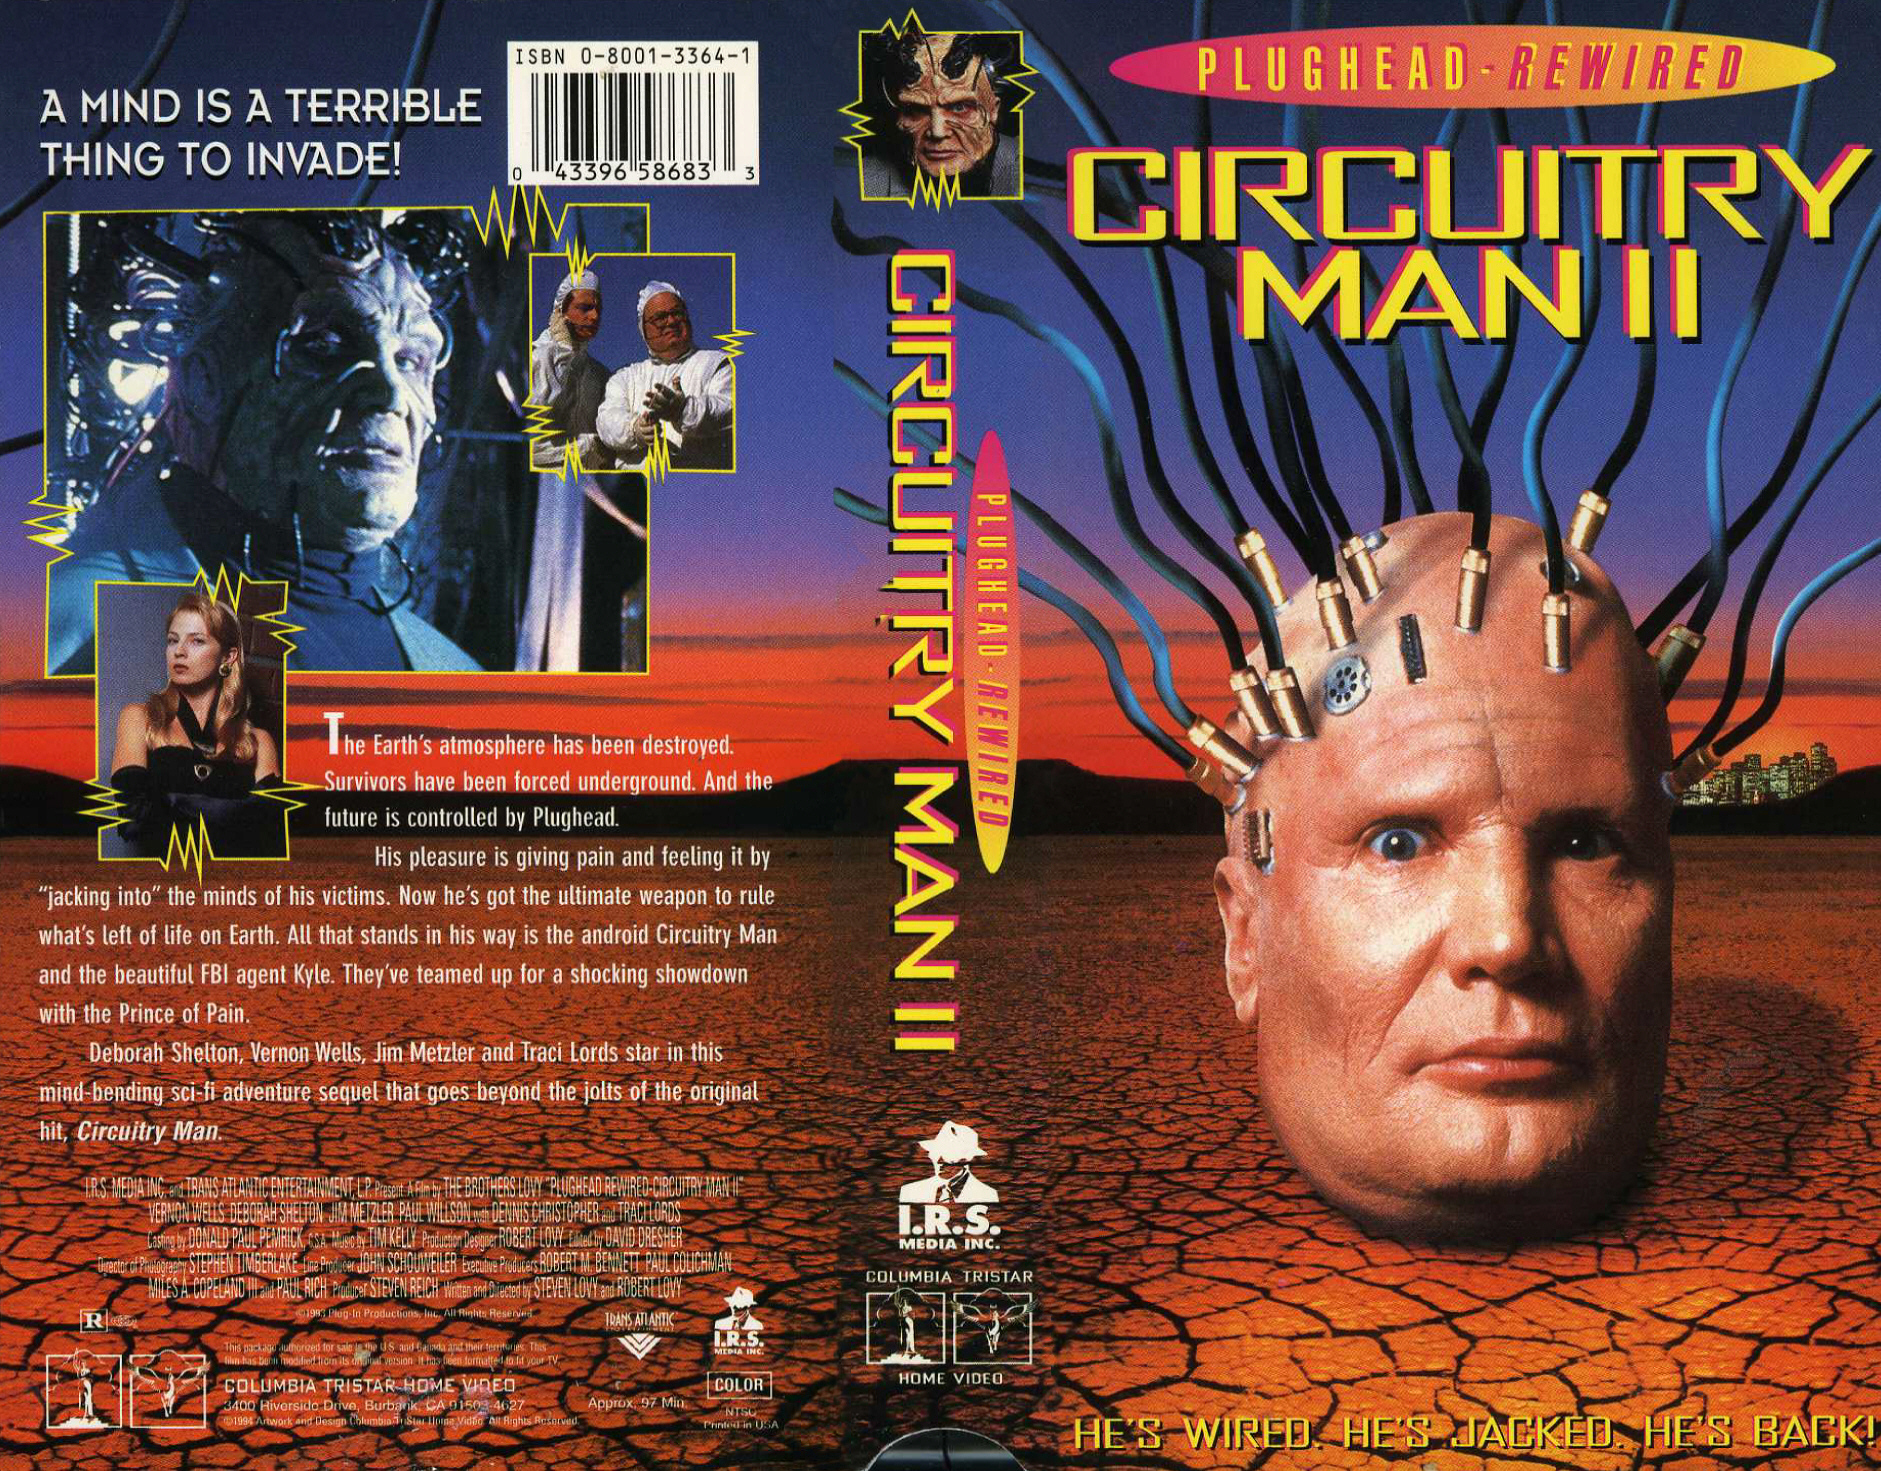 Plughead rewired: circuitry man II, 1994